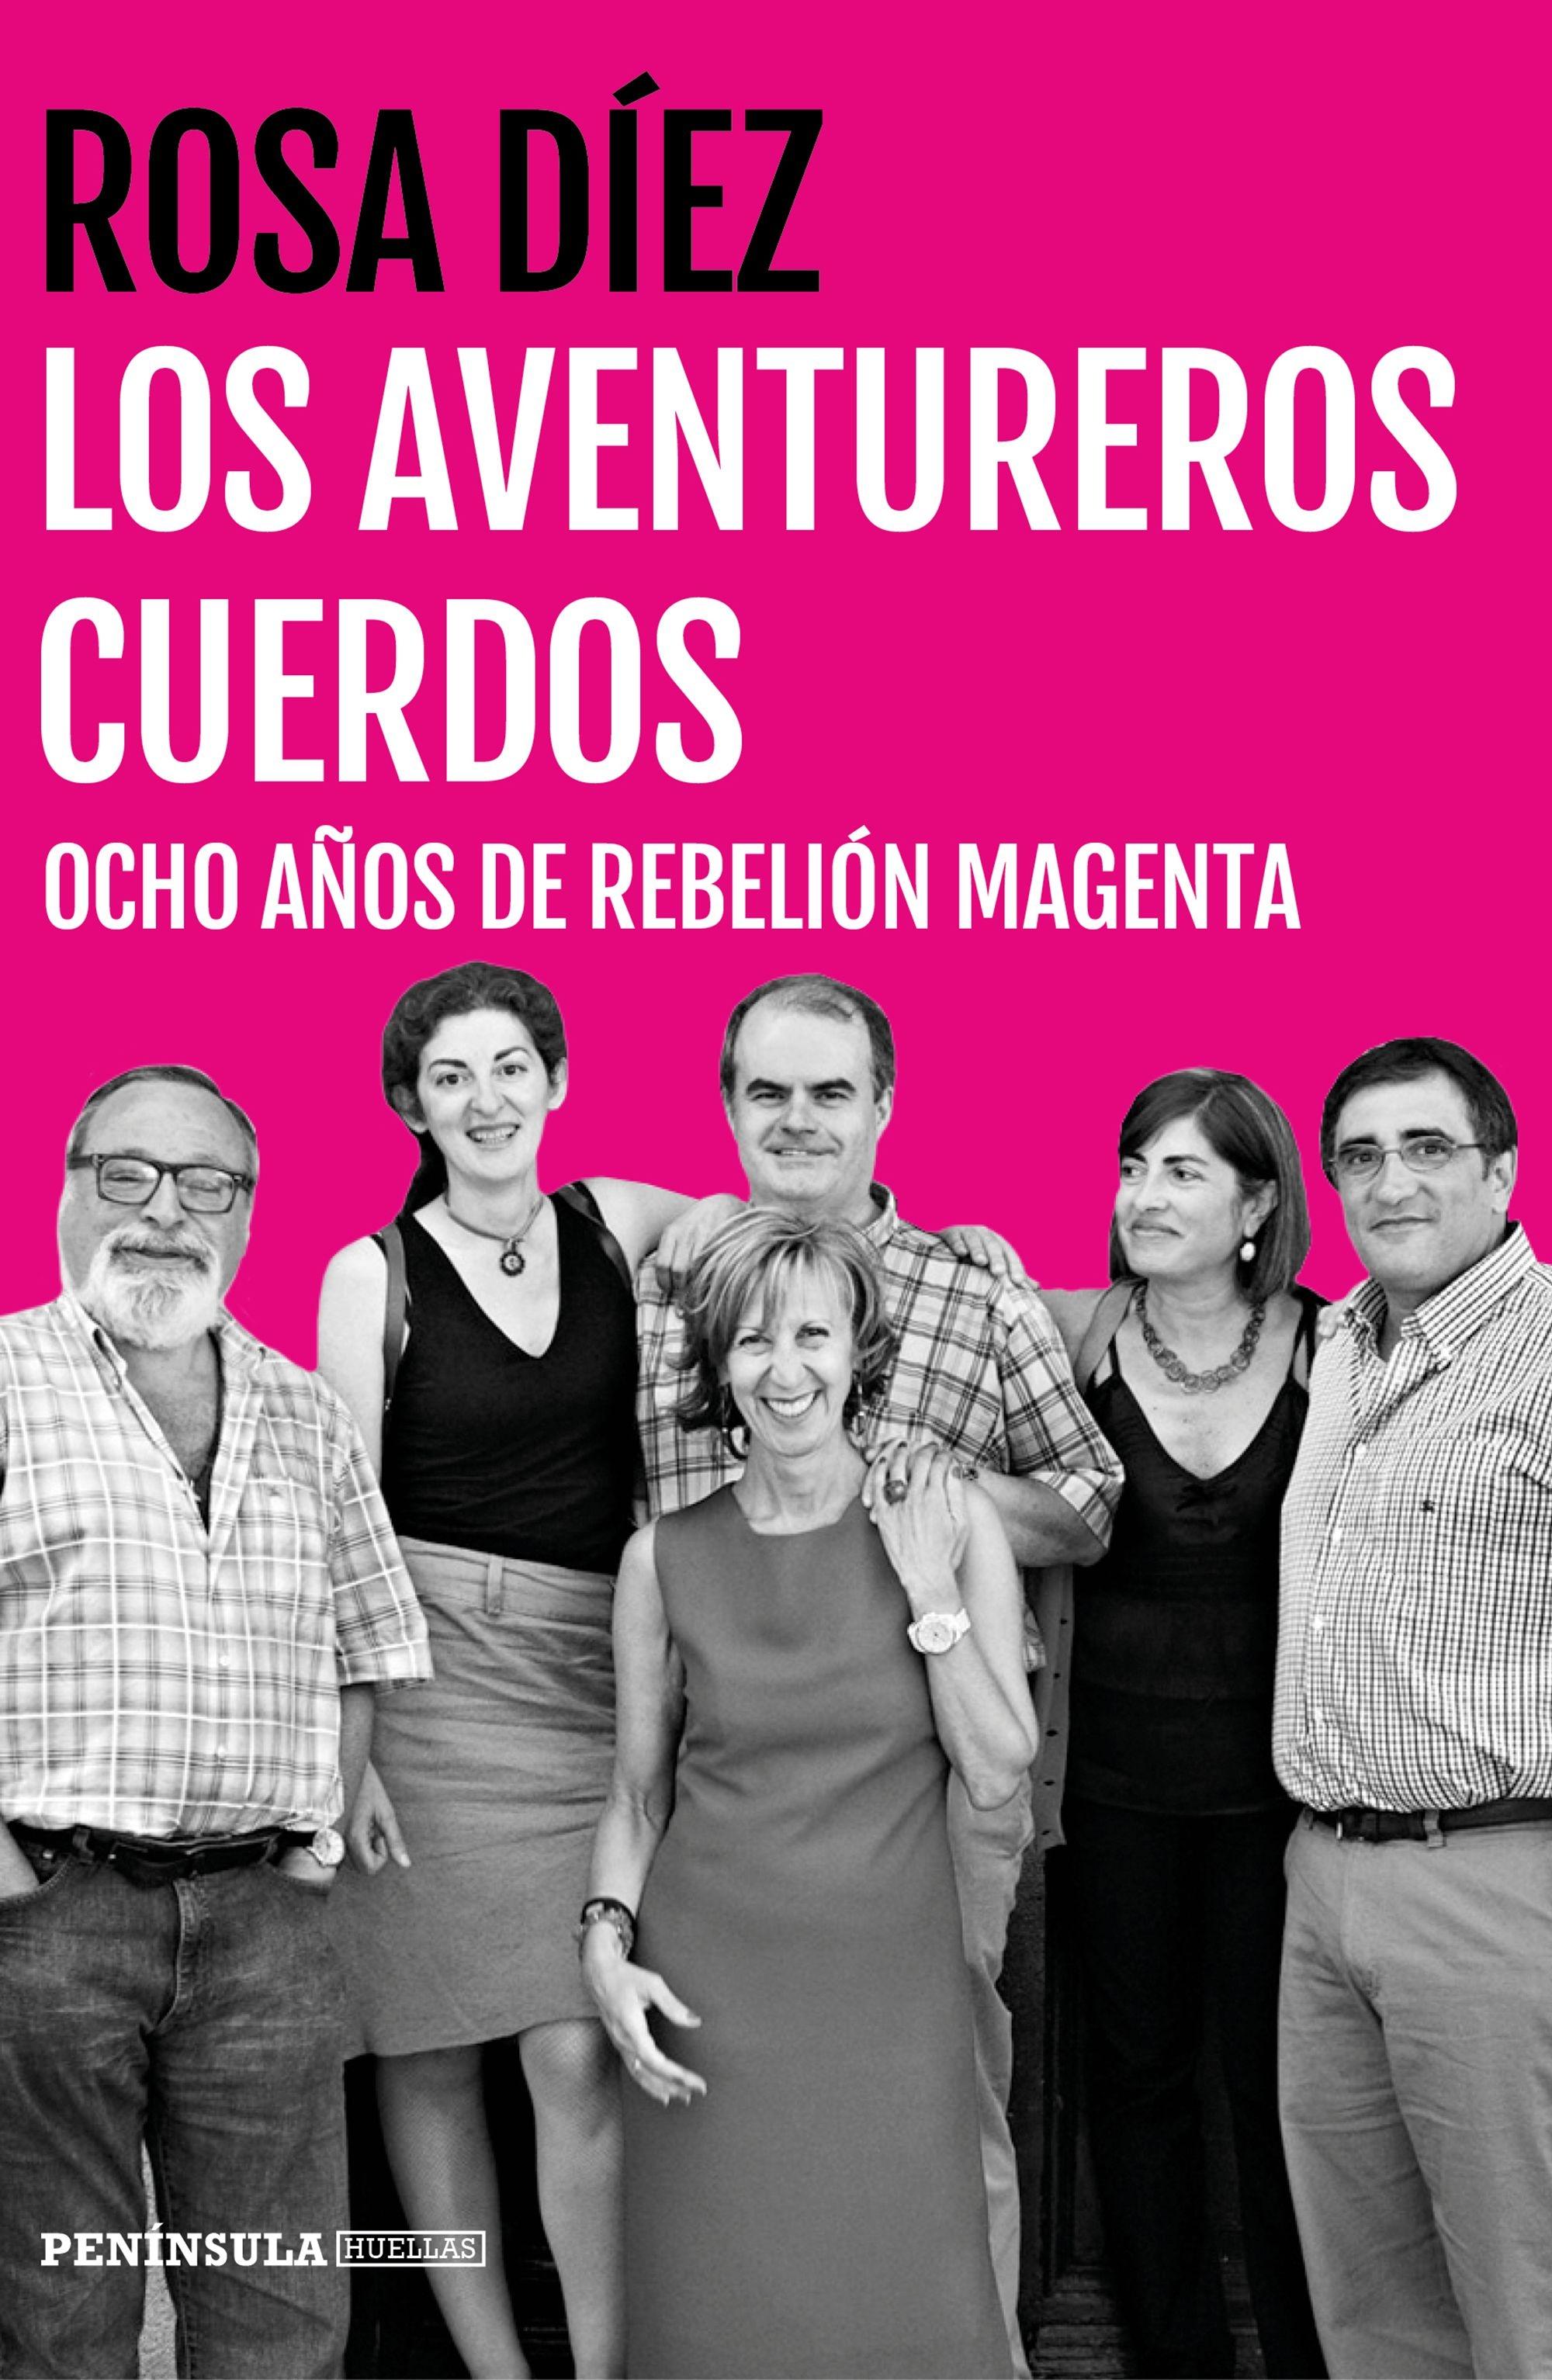 Los Aventureros Cuerdos "Ocho Años de Rebelión Magenta"